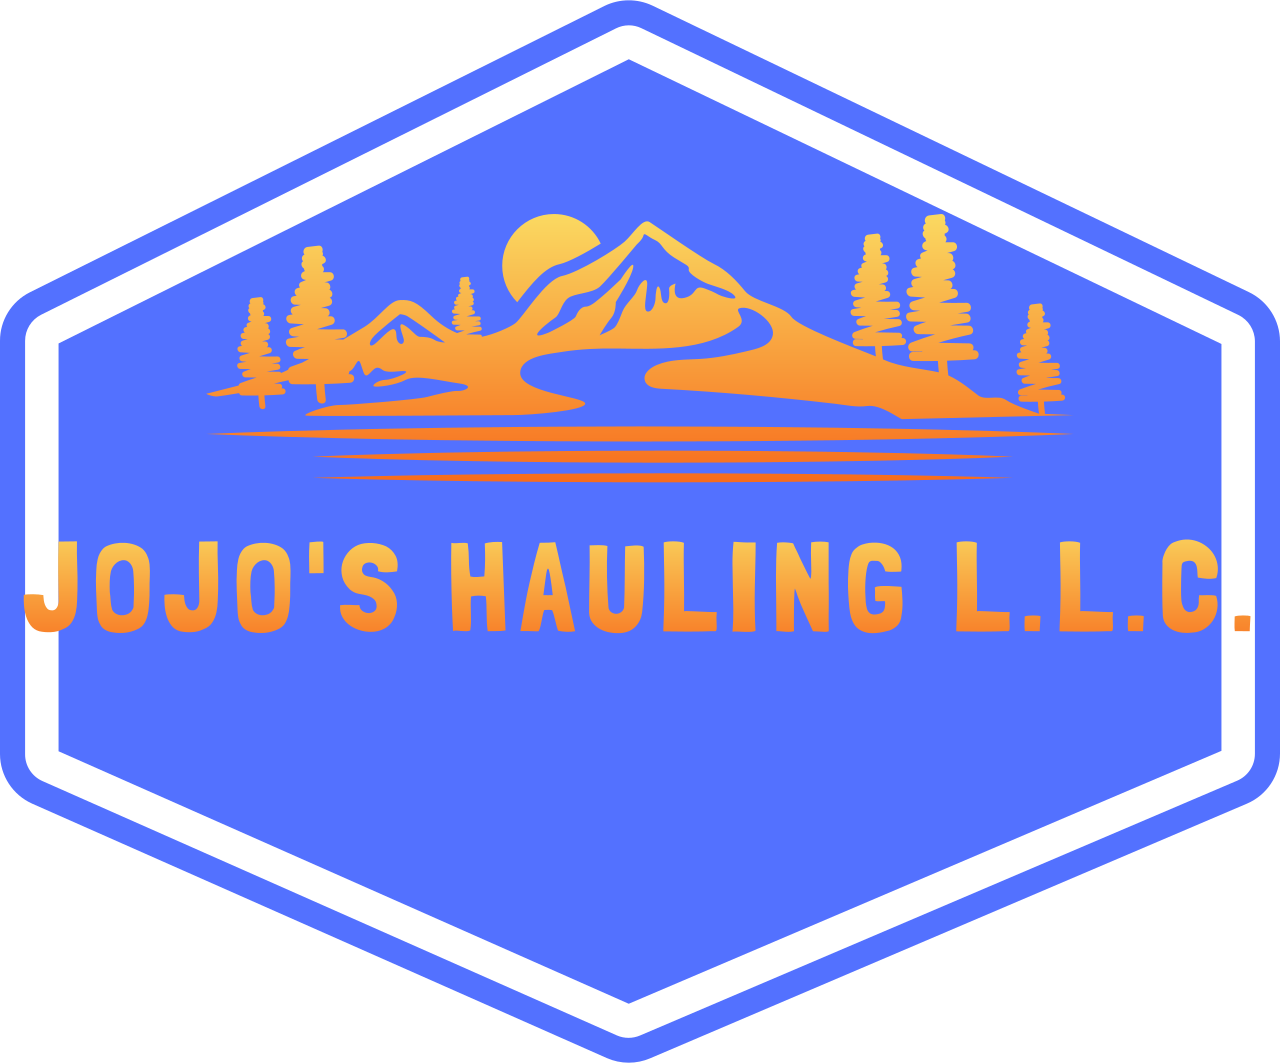 JoJo's Hauling L.L.C.'s web page